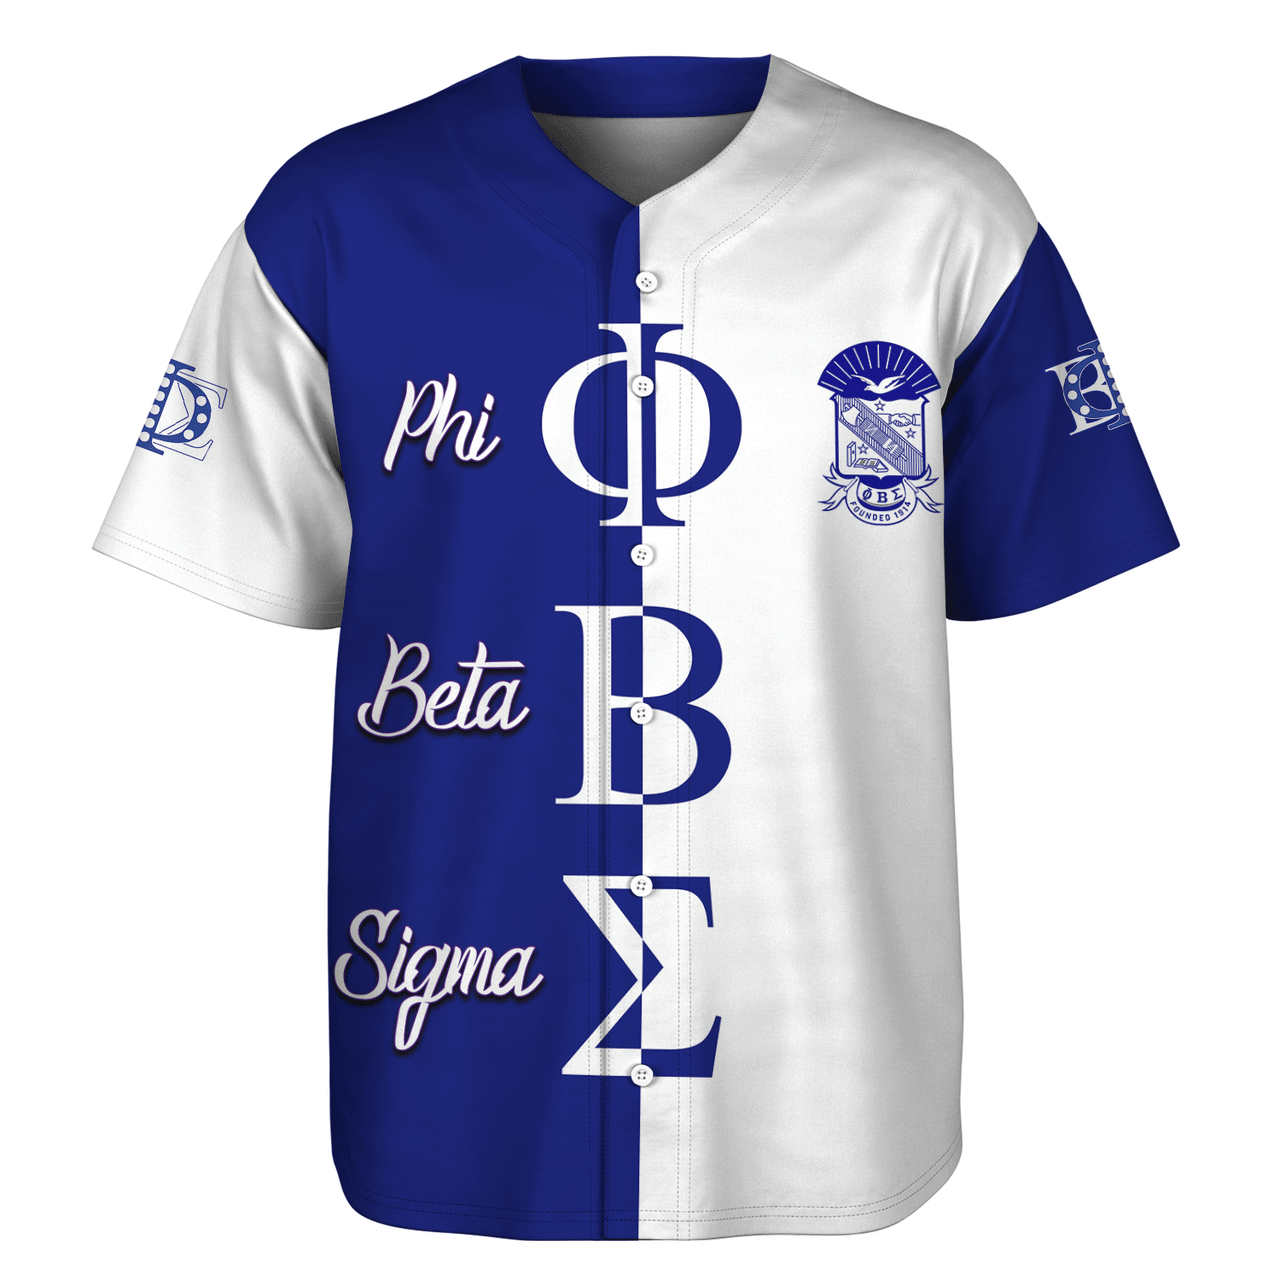 Phi Beta Sigma Baseball Shirt Half Style